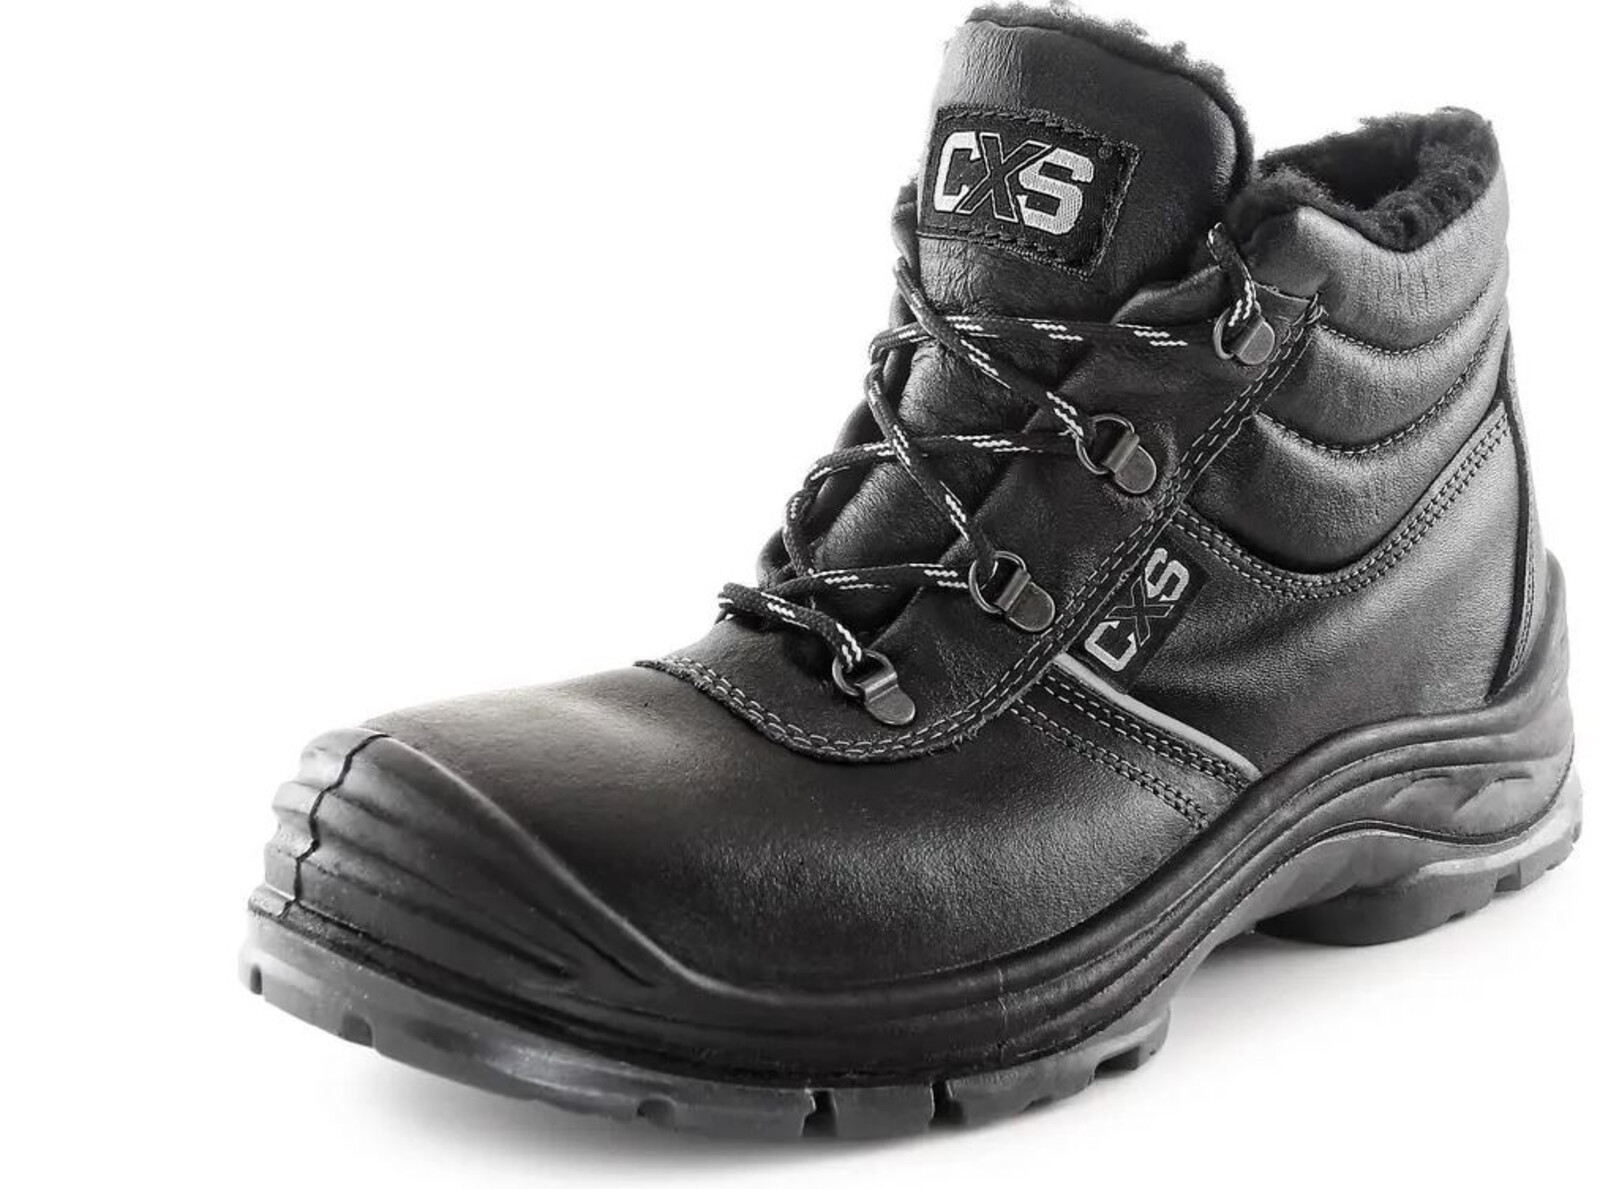 Zimná bezpečnostná členková obuv CXS Safety Steel Nickel S3 - veľkosť: 46, farba: čierna